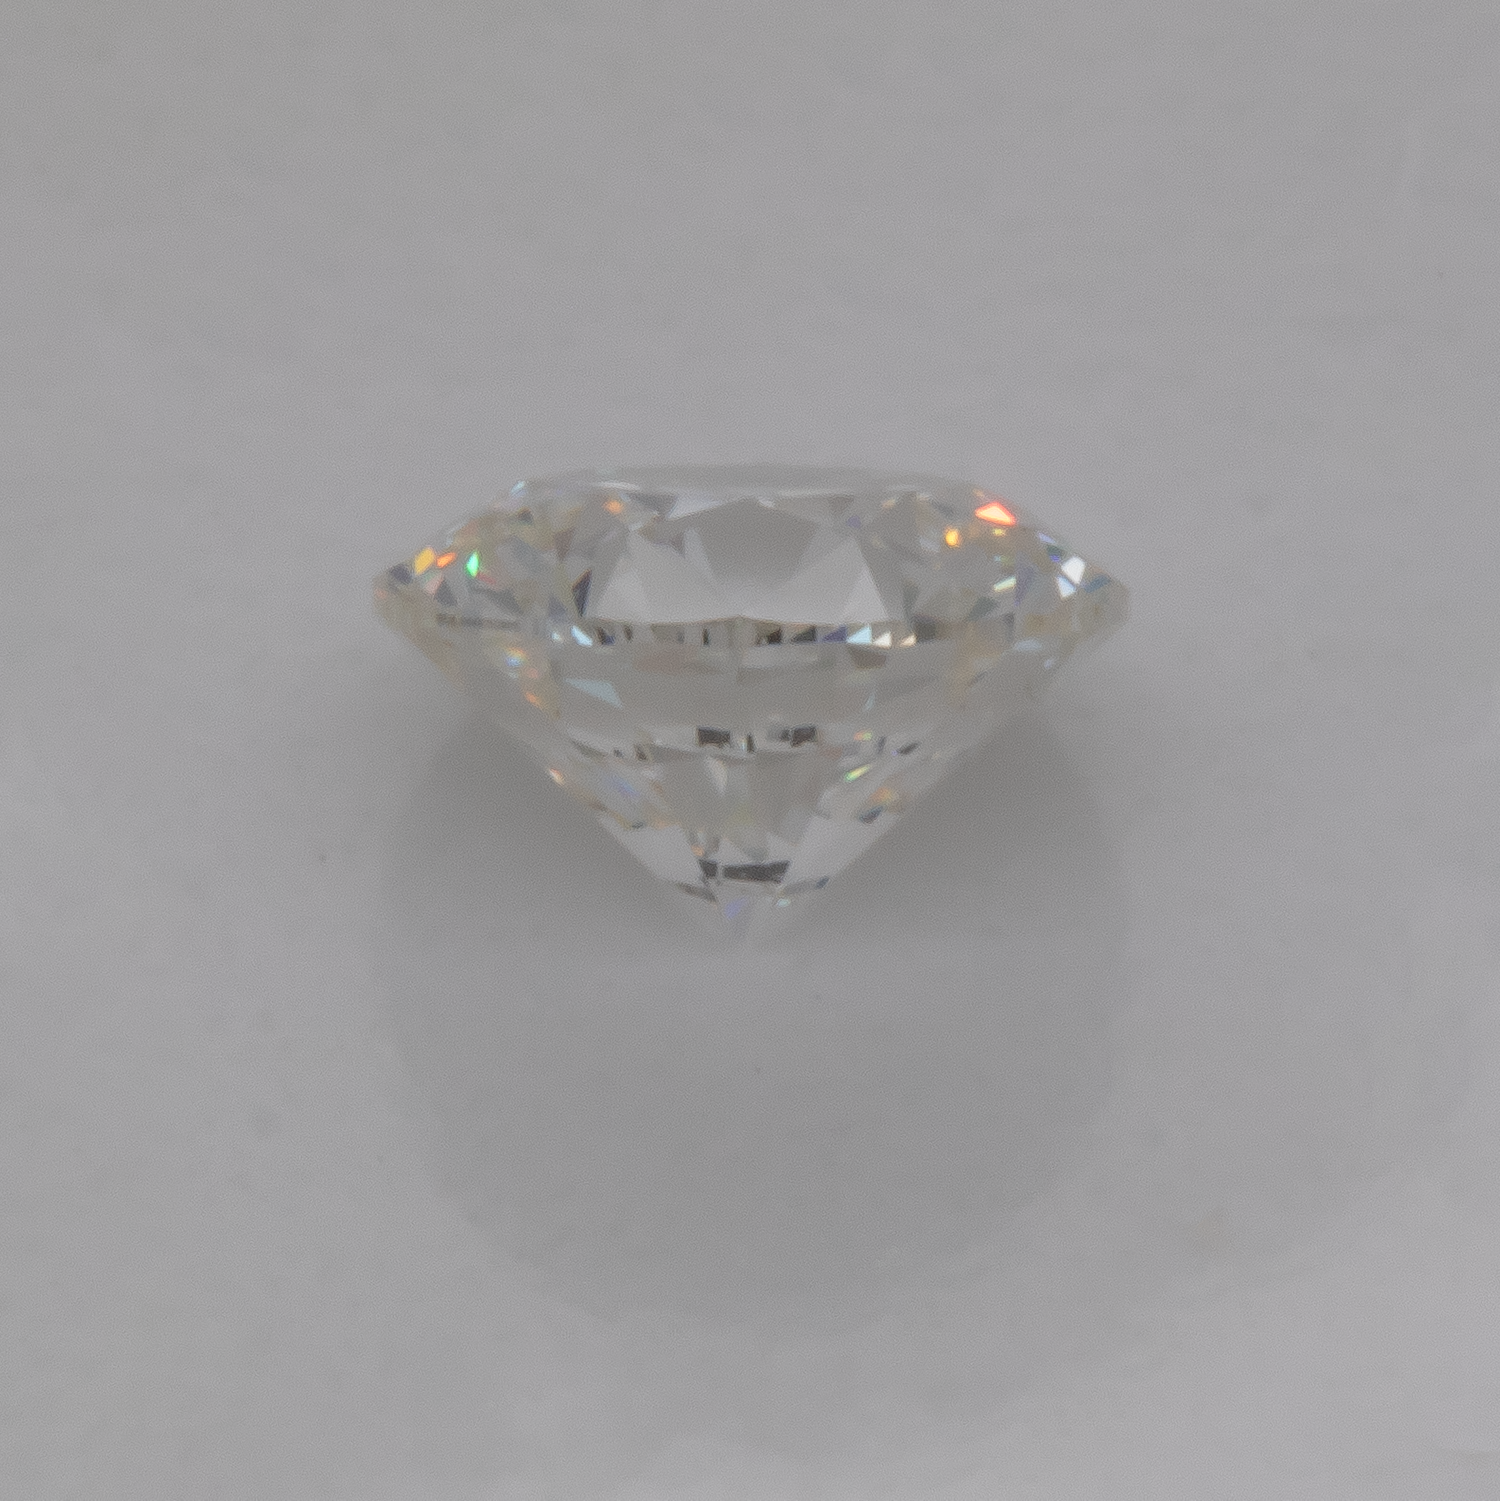 Diamant - Feines Weiß, rund, 4.01x4.04 mm, 0.25 cts, Nr. D11085